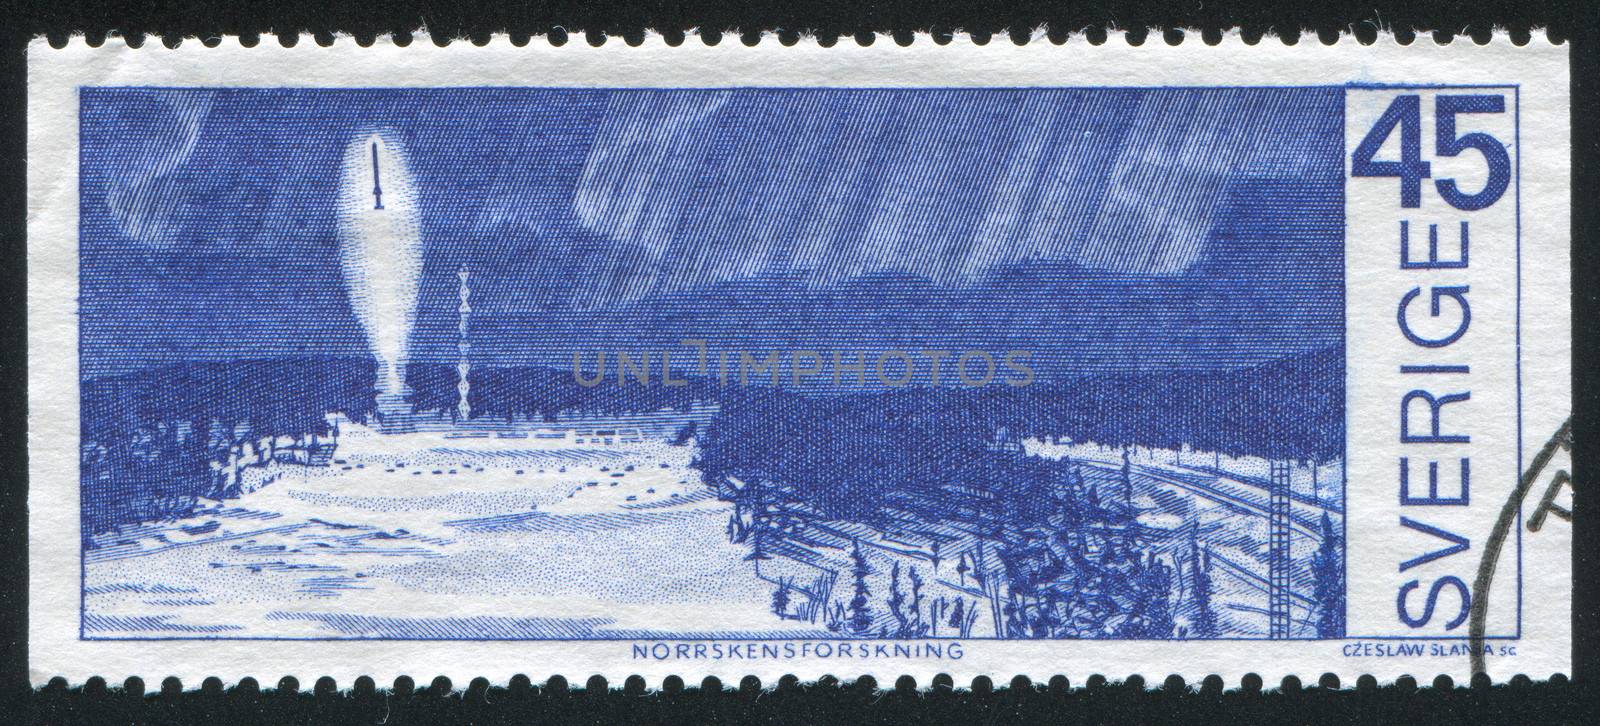 SWEDEN - CIRCA 1970: stamp printed by Sweden, shows Rocket probe under northern lights, circa 1970